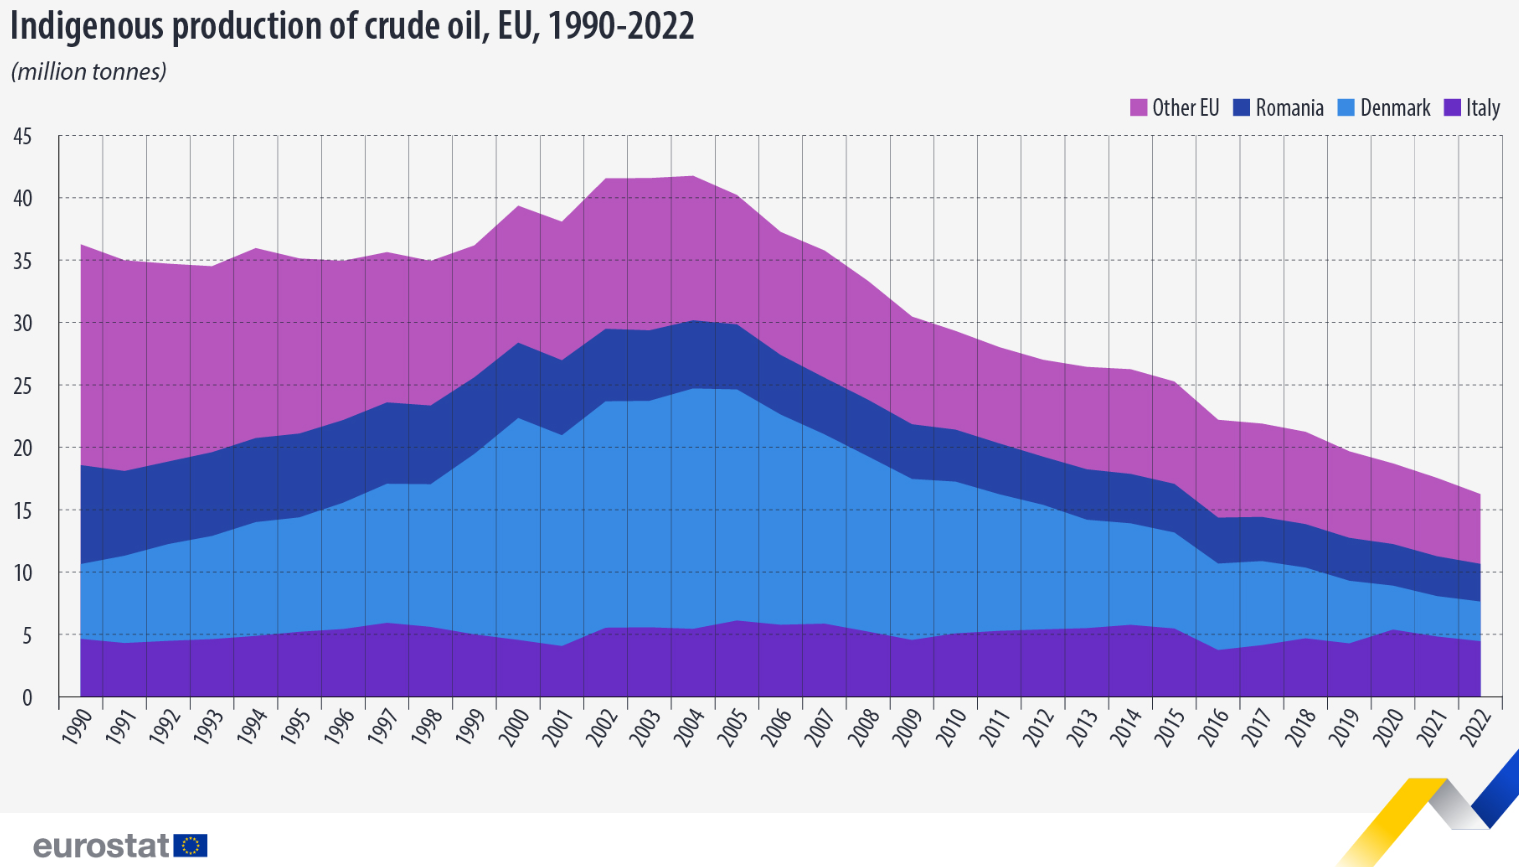 La producción de crudo de la UE se desplomó hasta los 16,3 millones de toneladas en 2022, un -7,4% respecto a 2021